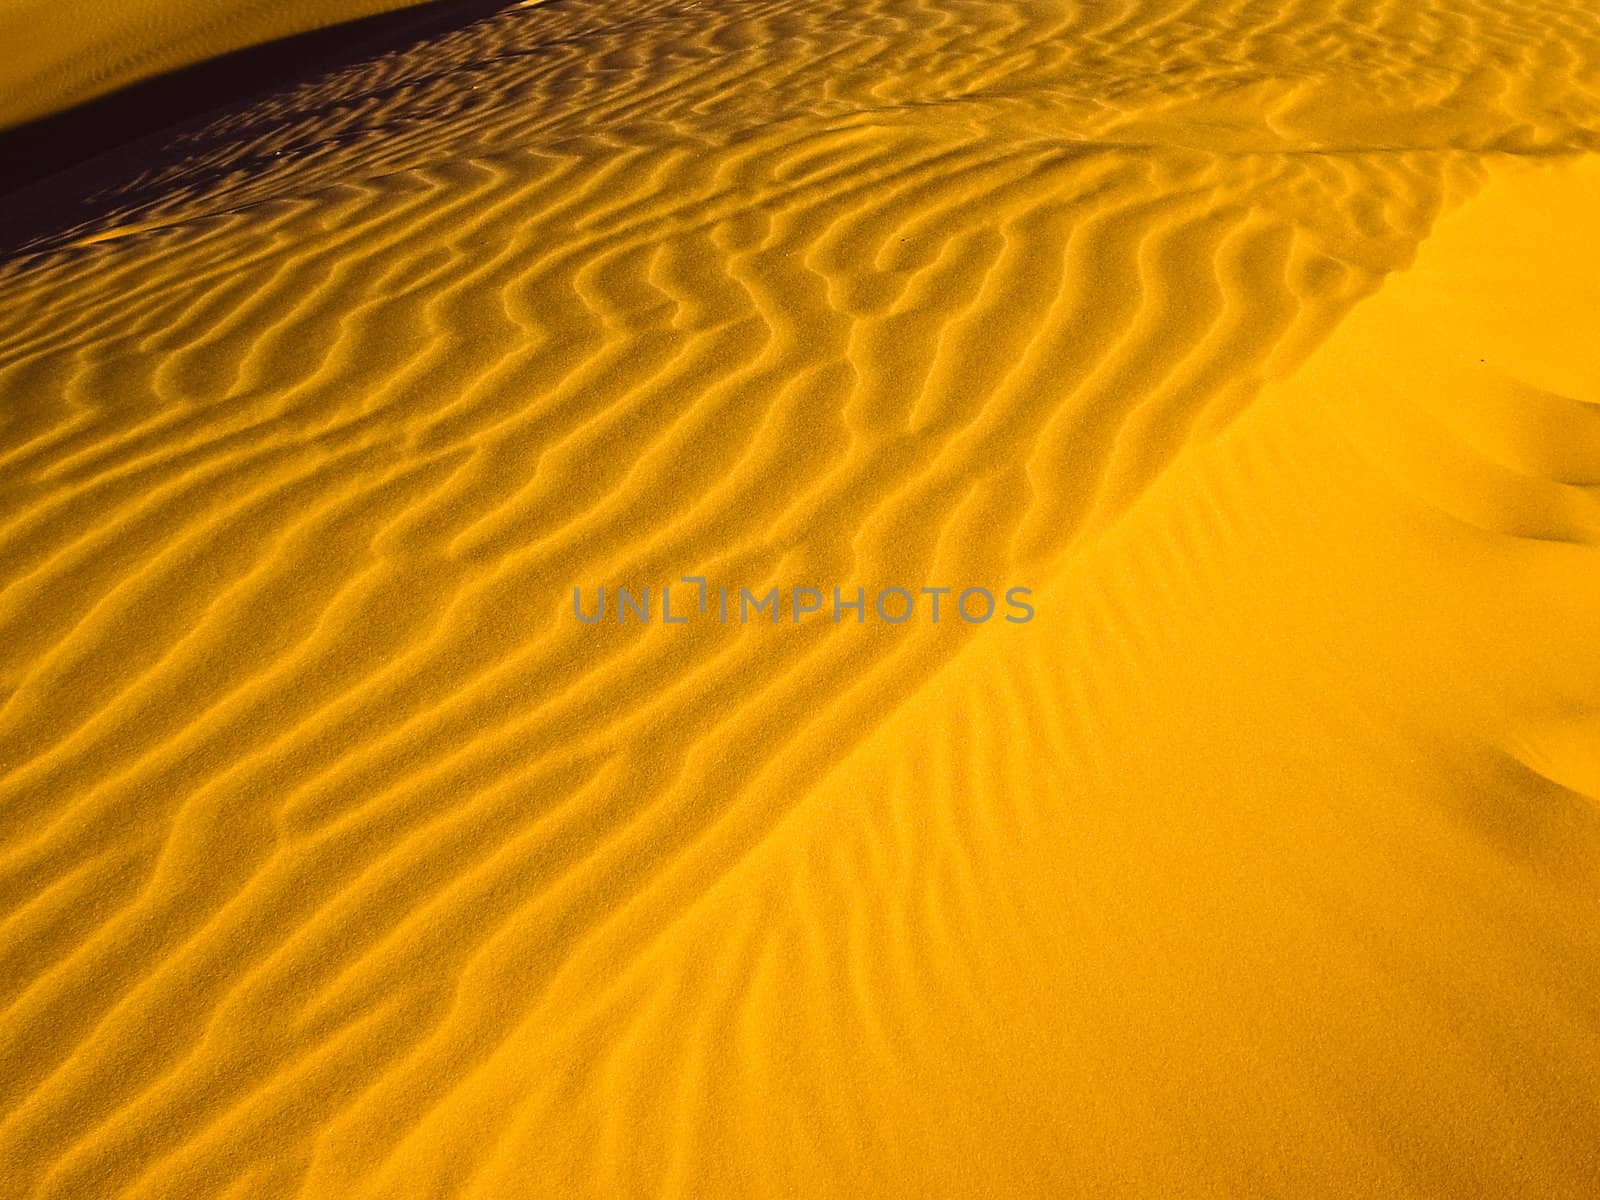 Golden Waves of Sand by emattil